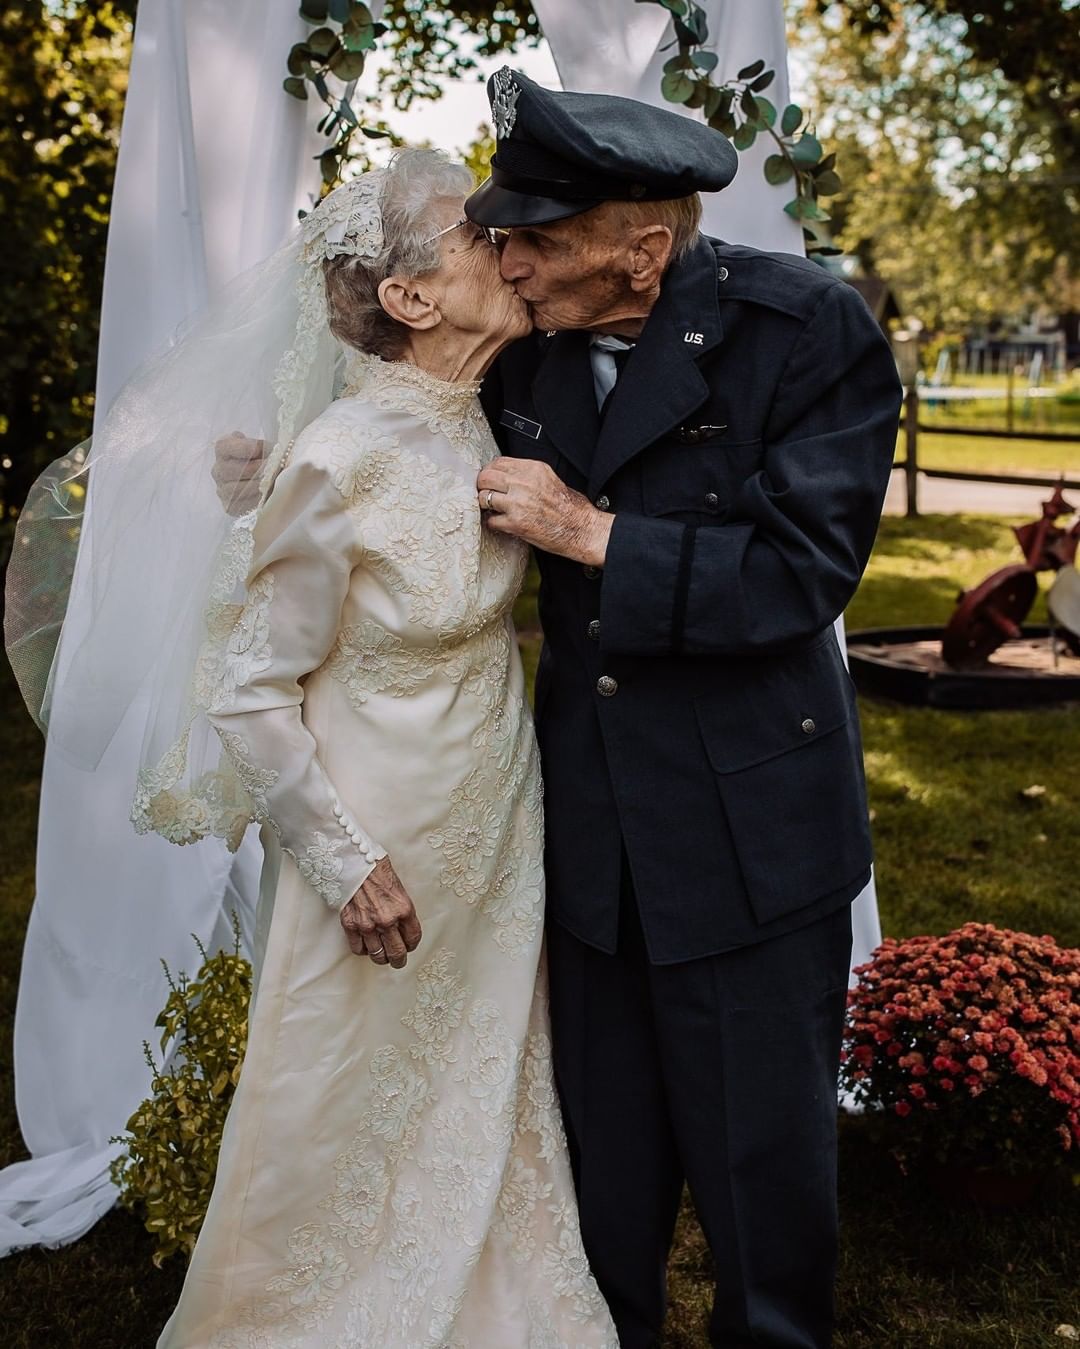 Royce e Frankie King tiram fotos de casamento 77 anos depois. Foto: Reprodução/Instagram Hilary Michelson / St. Croix Hospice, Special to the Des Monies Register